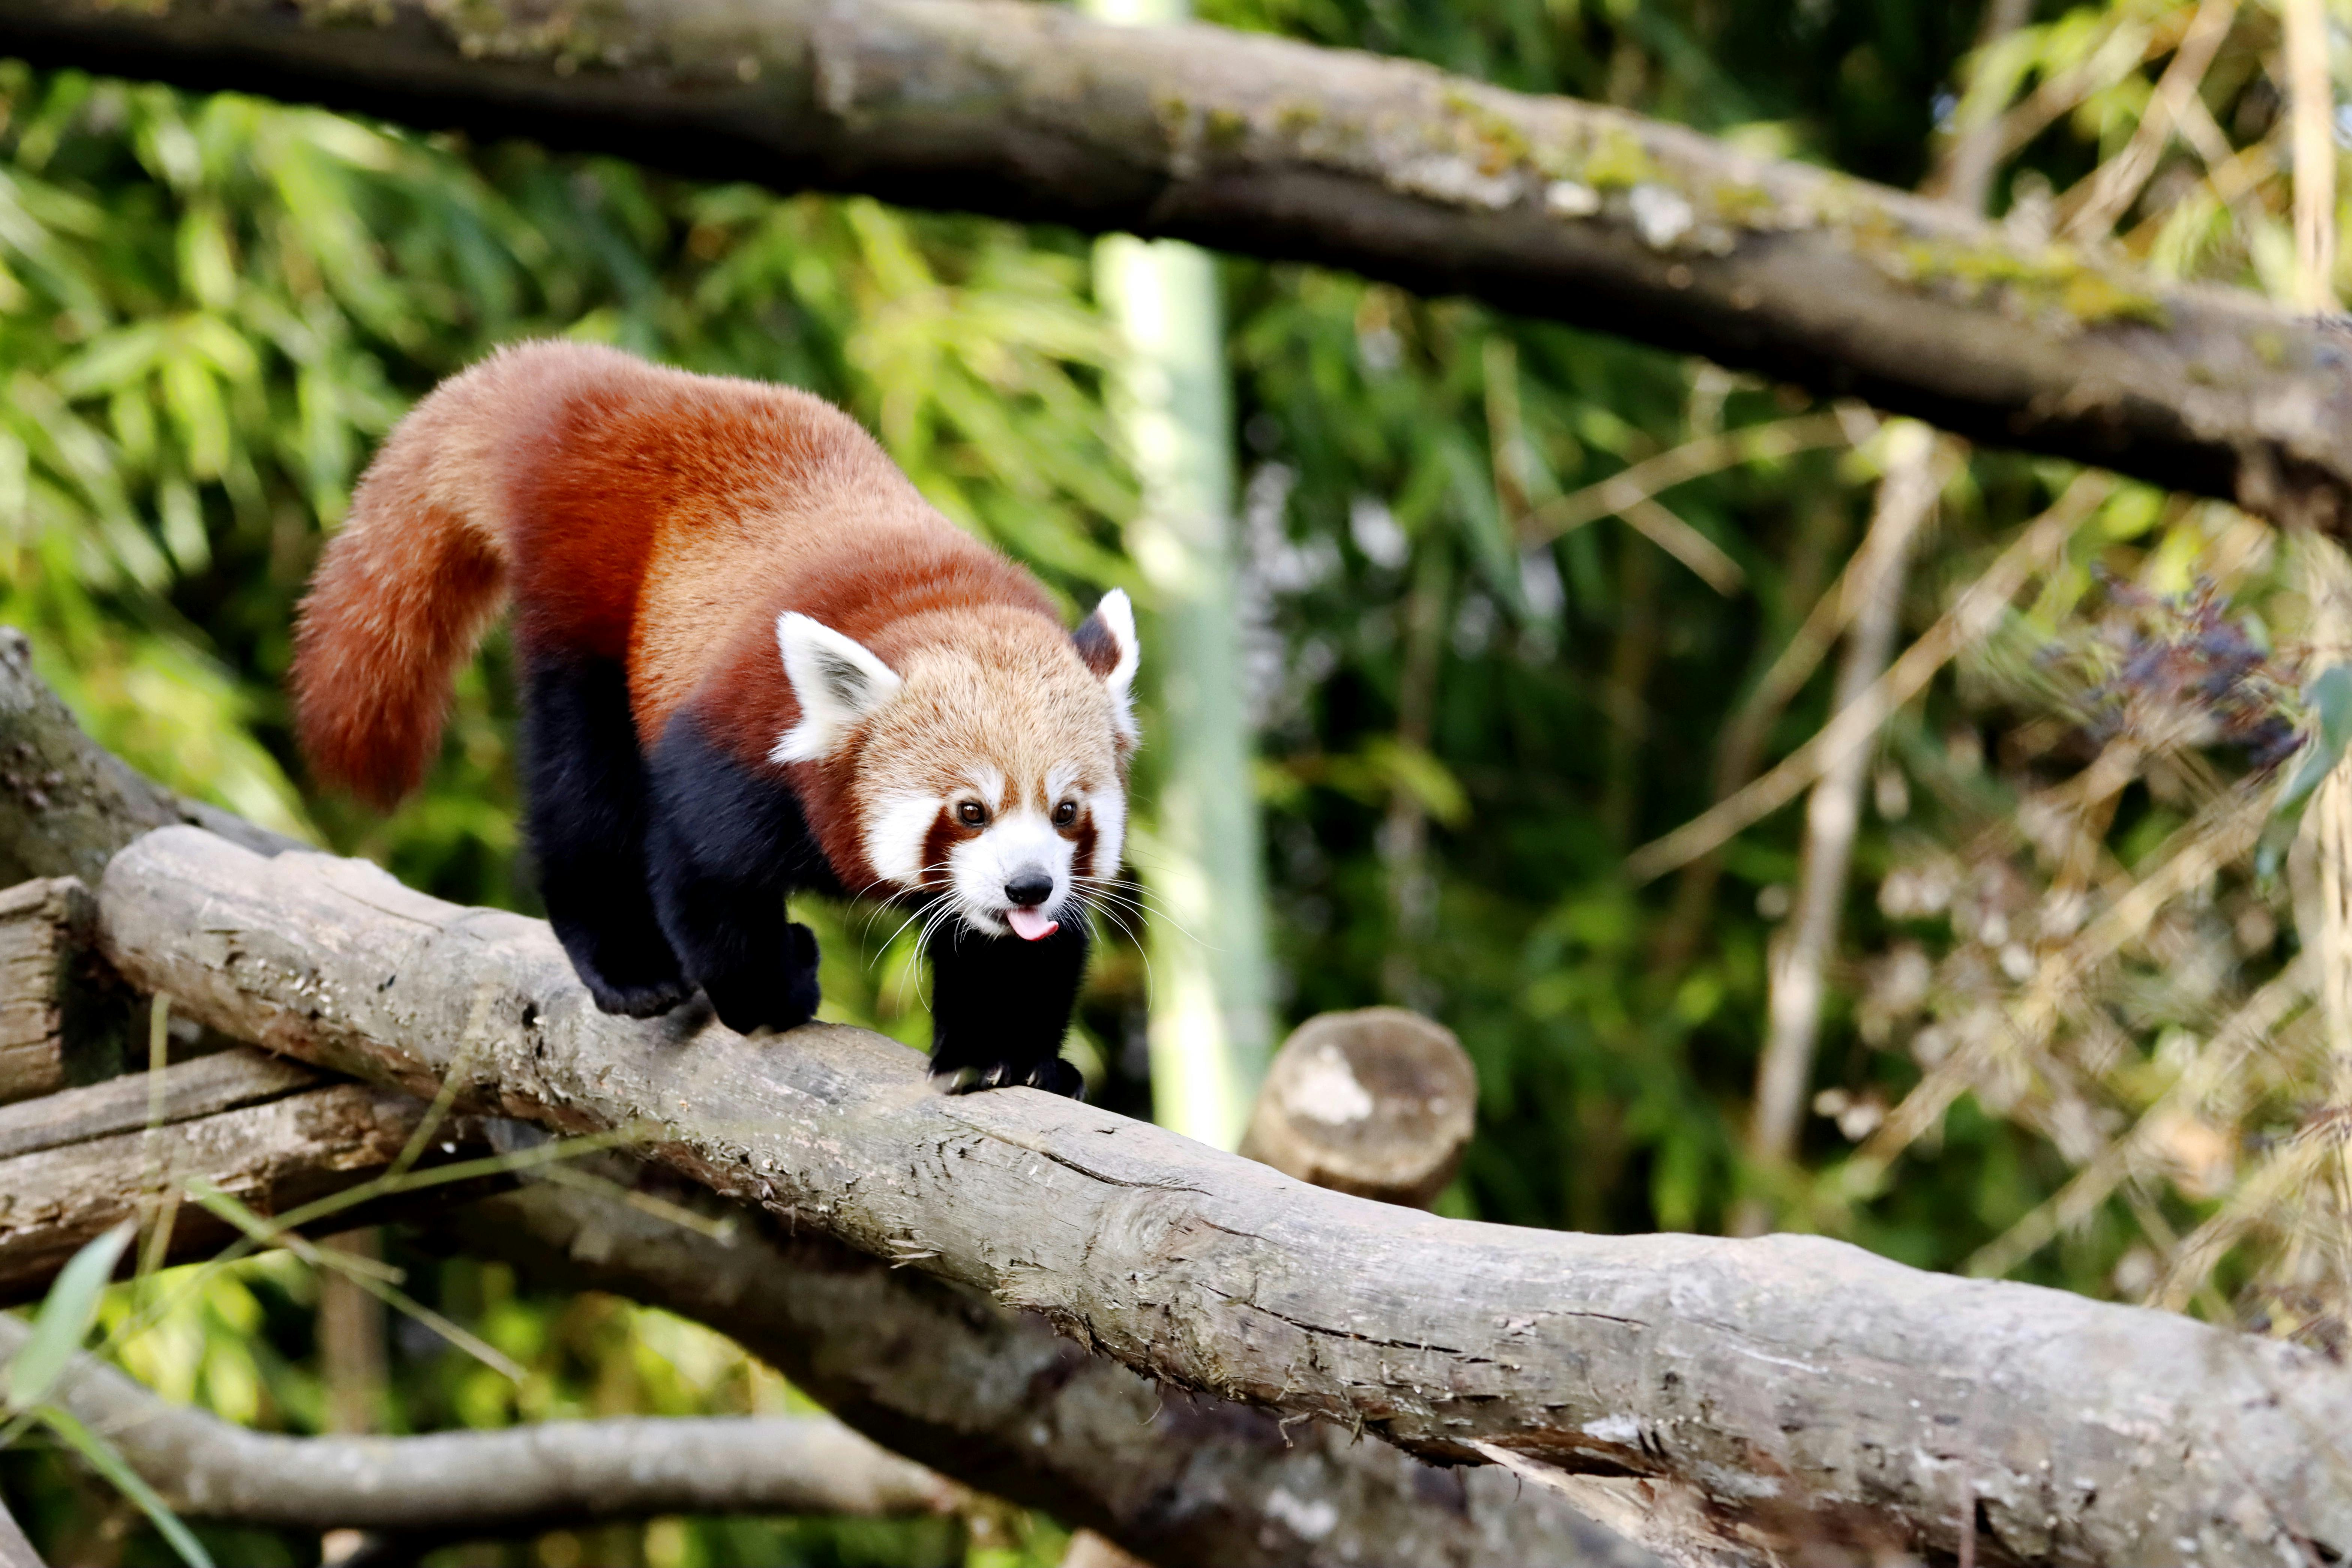 Close-Up Shot of Red Panda Walking · Free Stock Photo